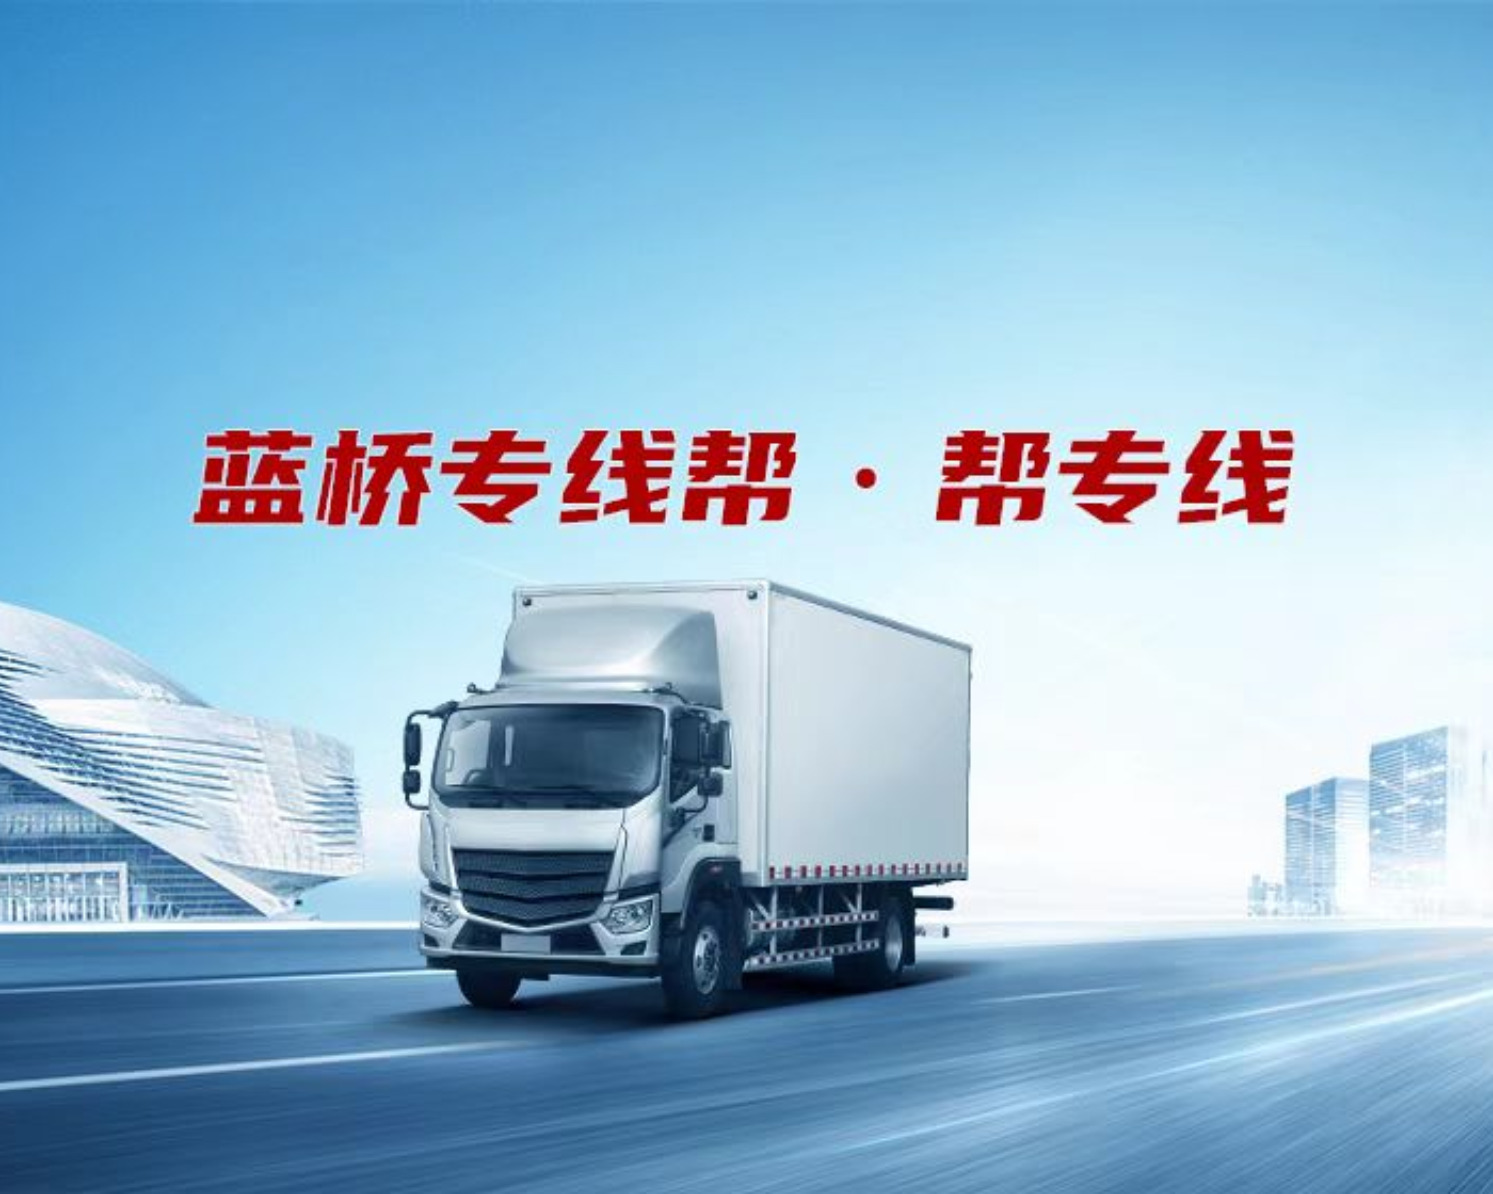 广州明钧国际货运代理有限公司的专线公司的形象展示LOGO